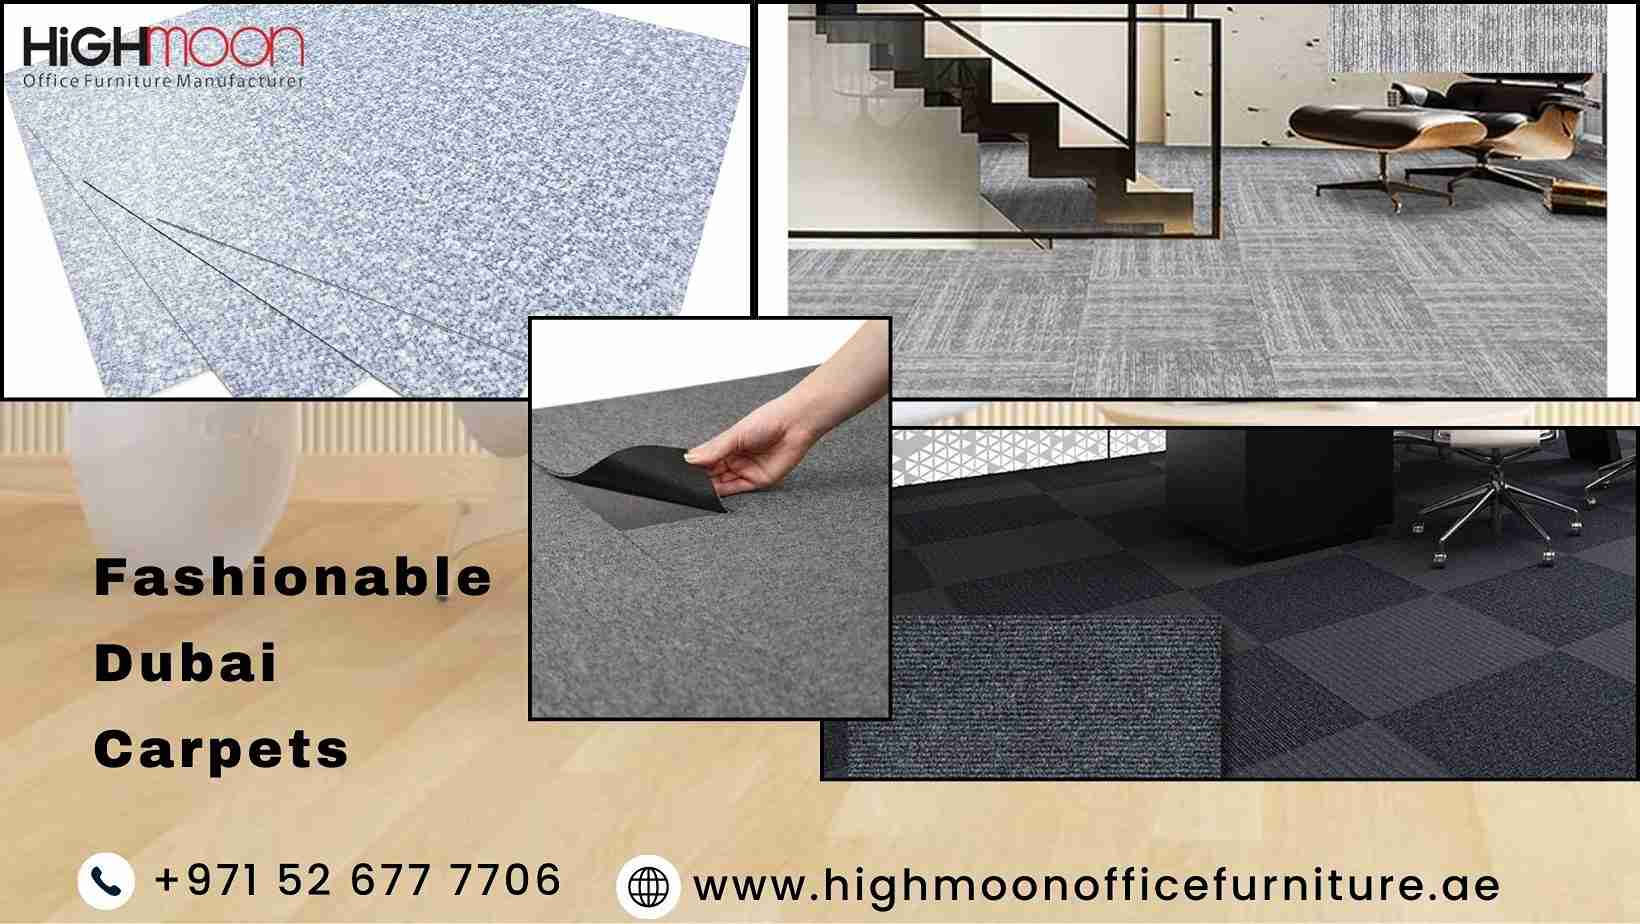 Manufacturers of Fashionable Dubai Carpets